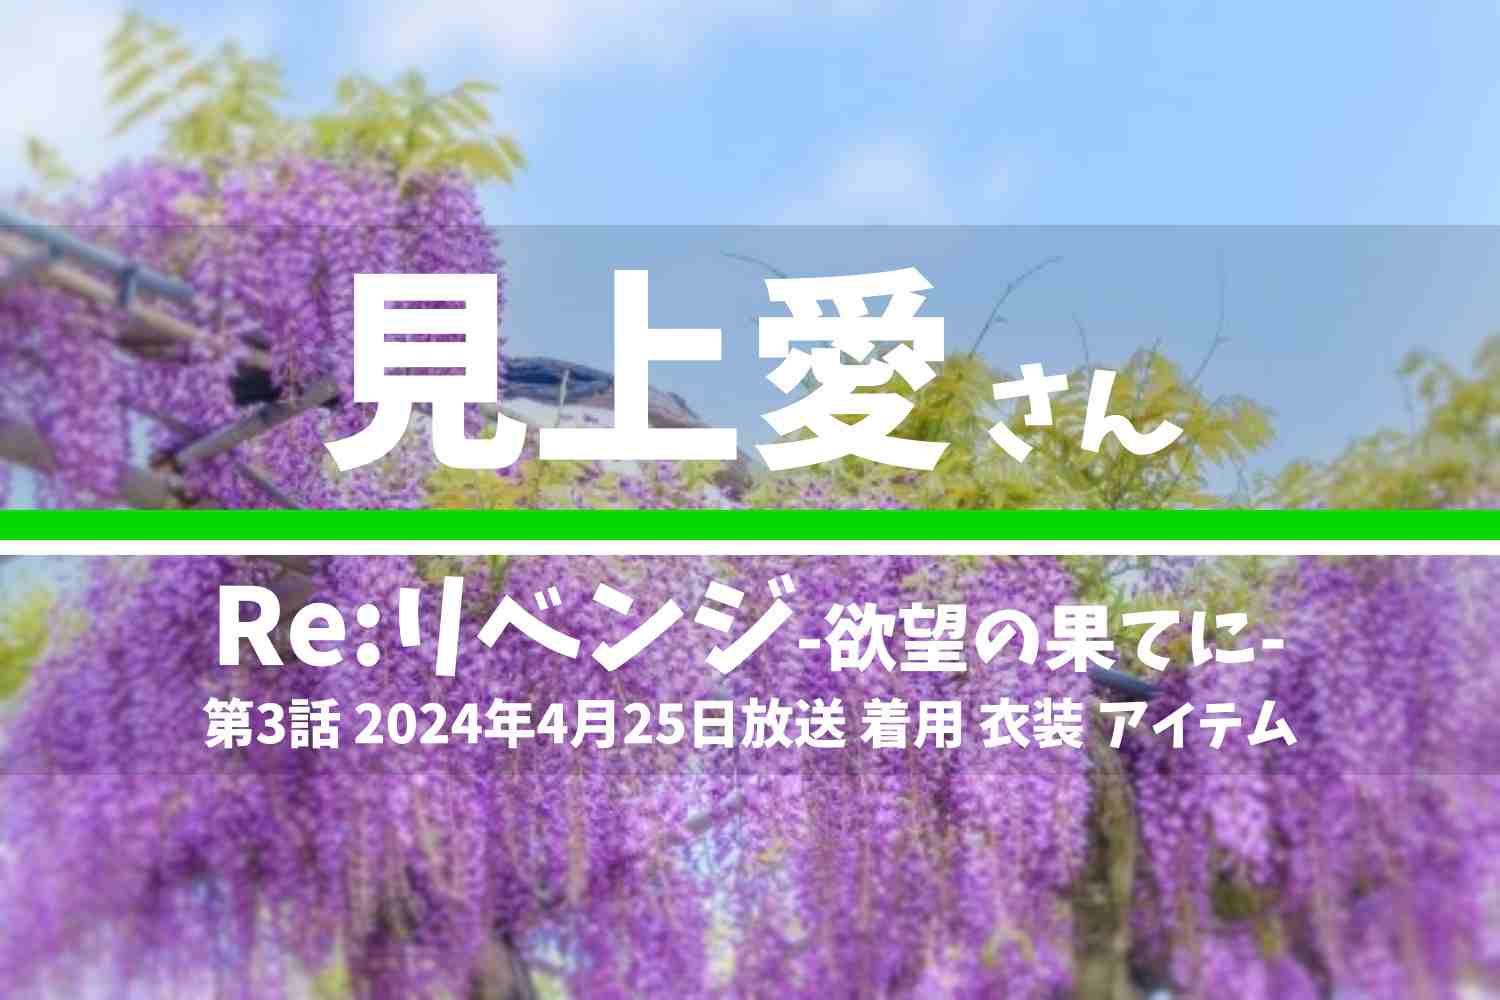 Re:リベンジ-欲望の果てに- 見上愛さん テレビドラマ 衣装 2024年4月25日放送